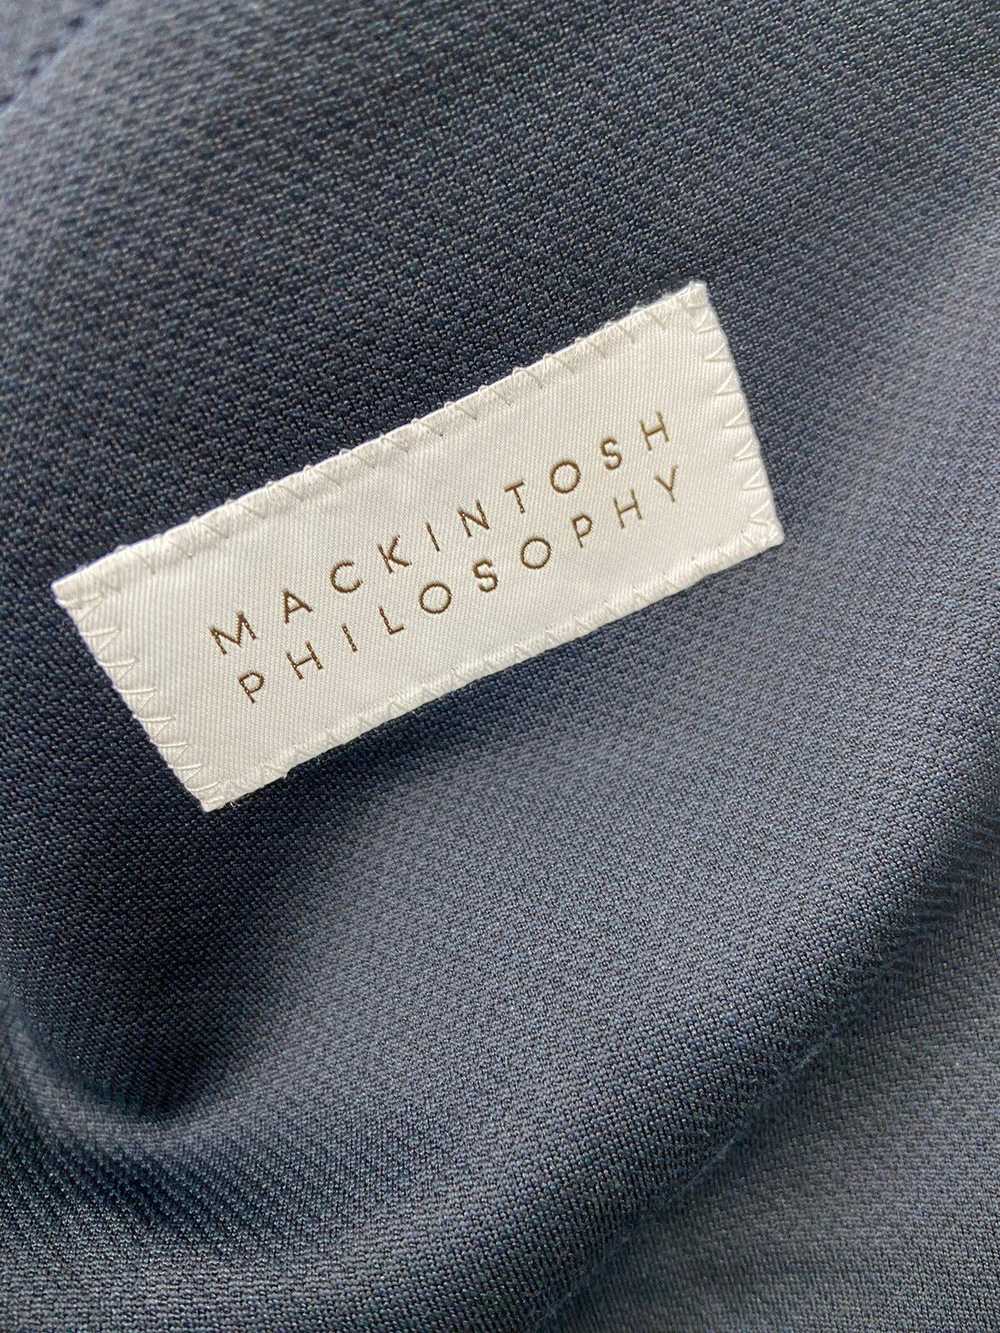 Mackintosh Vintage Mackintosh Philosophy Trotter … - image 8